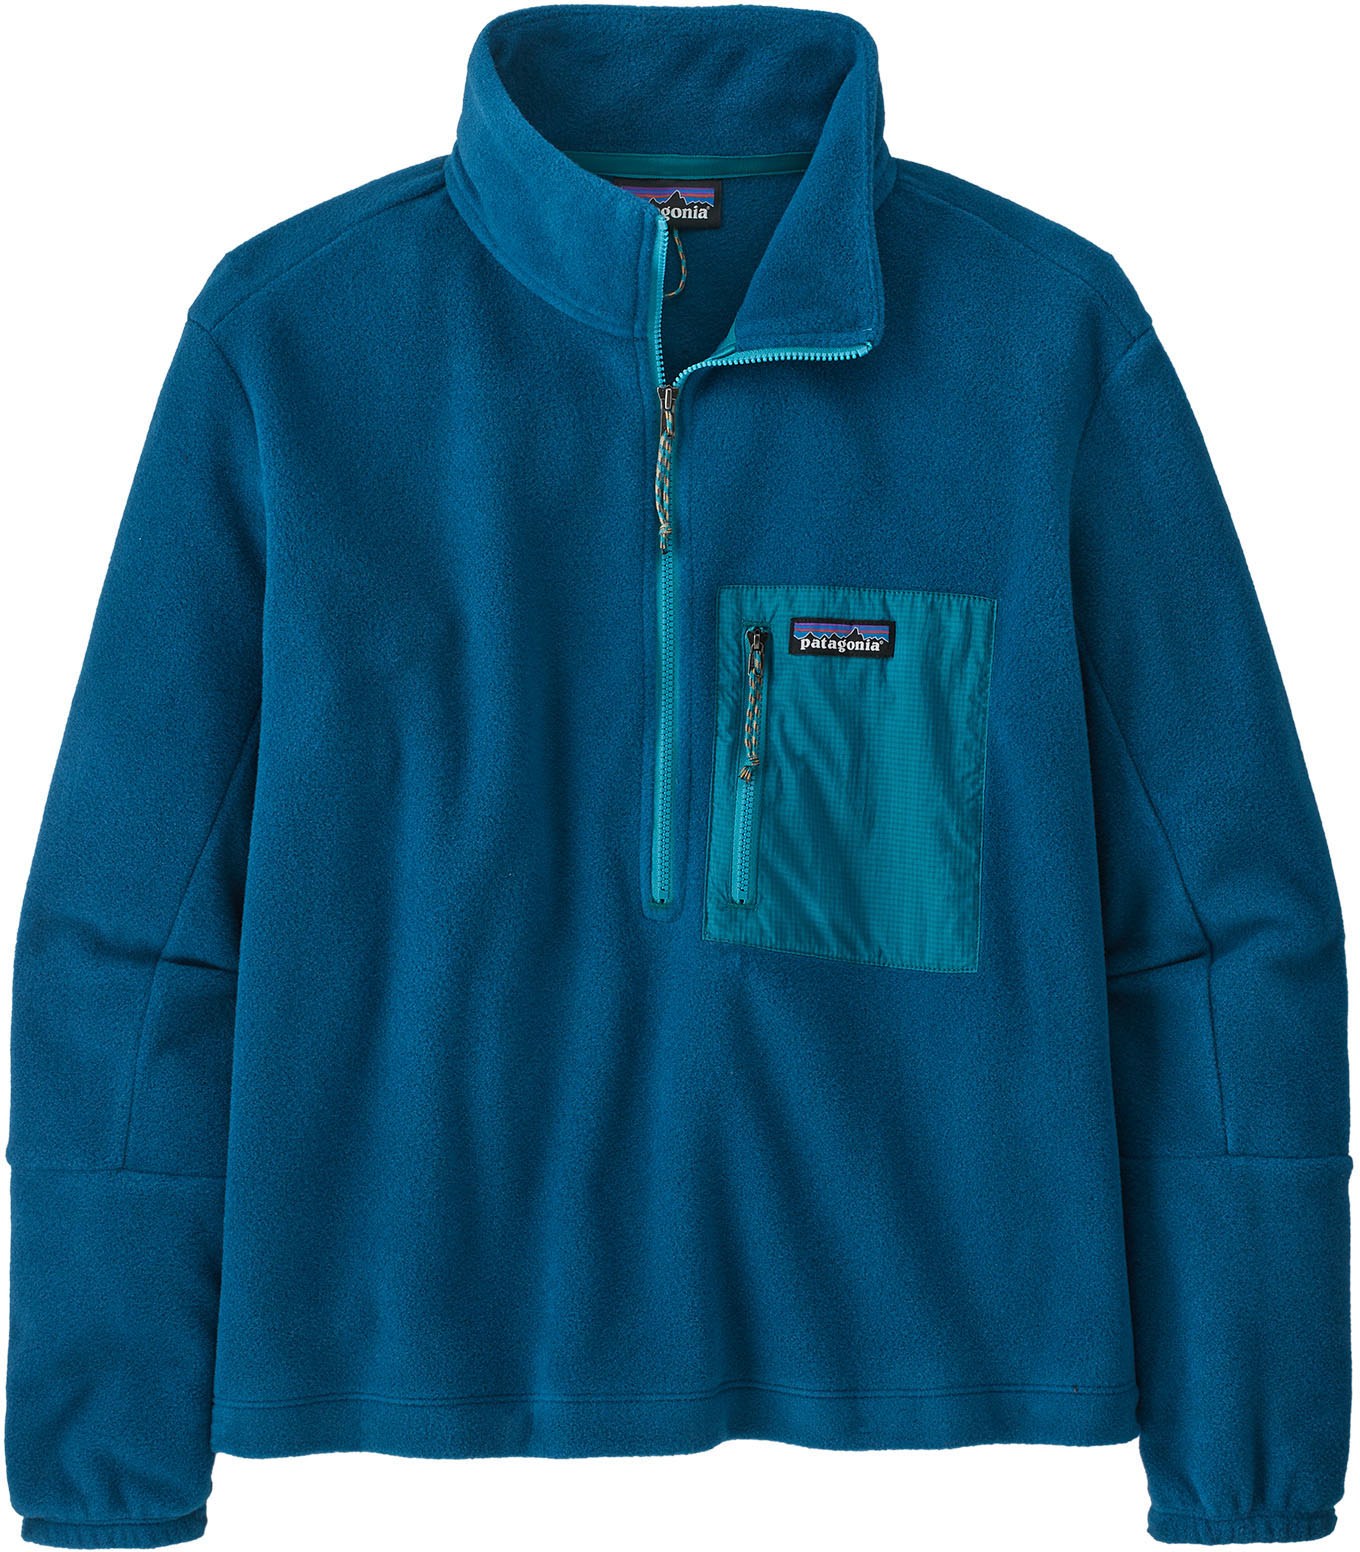 Флисовый пуловер Microdini с полумолнией - женский Patagonia, синий